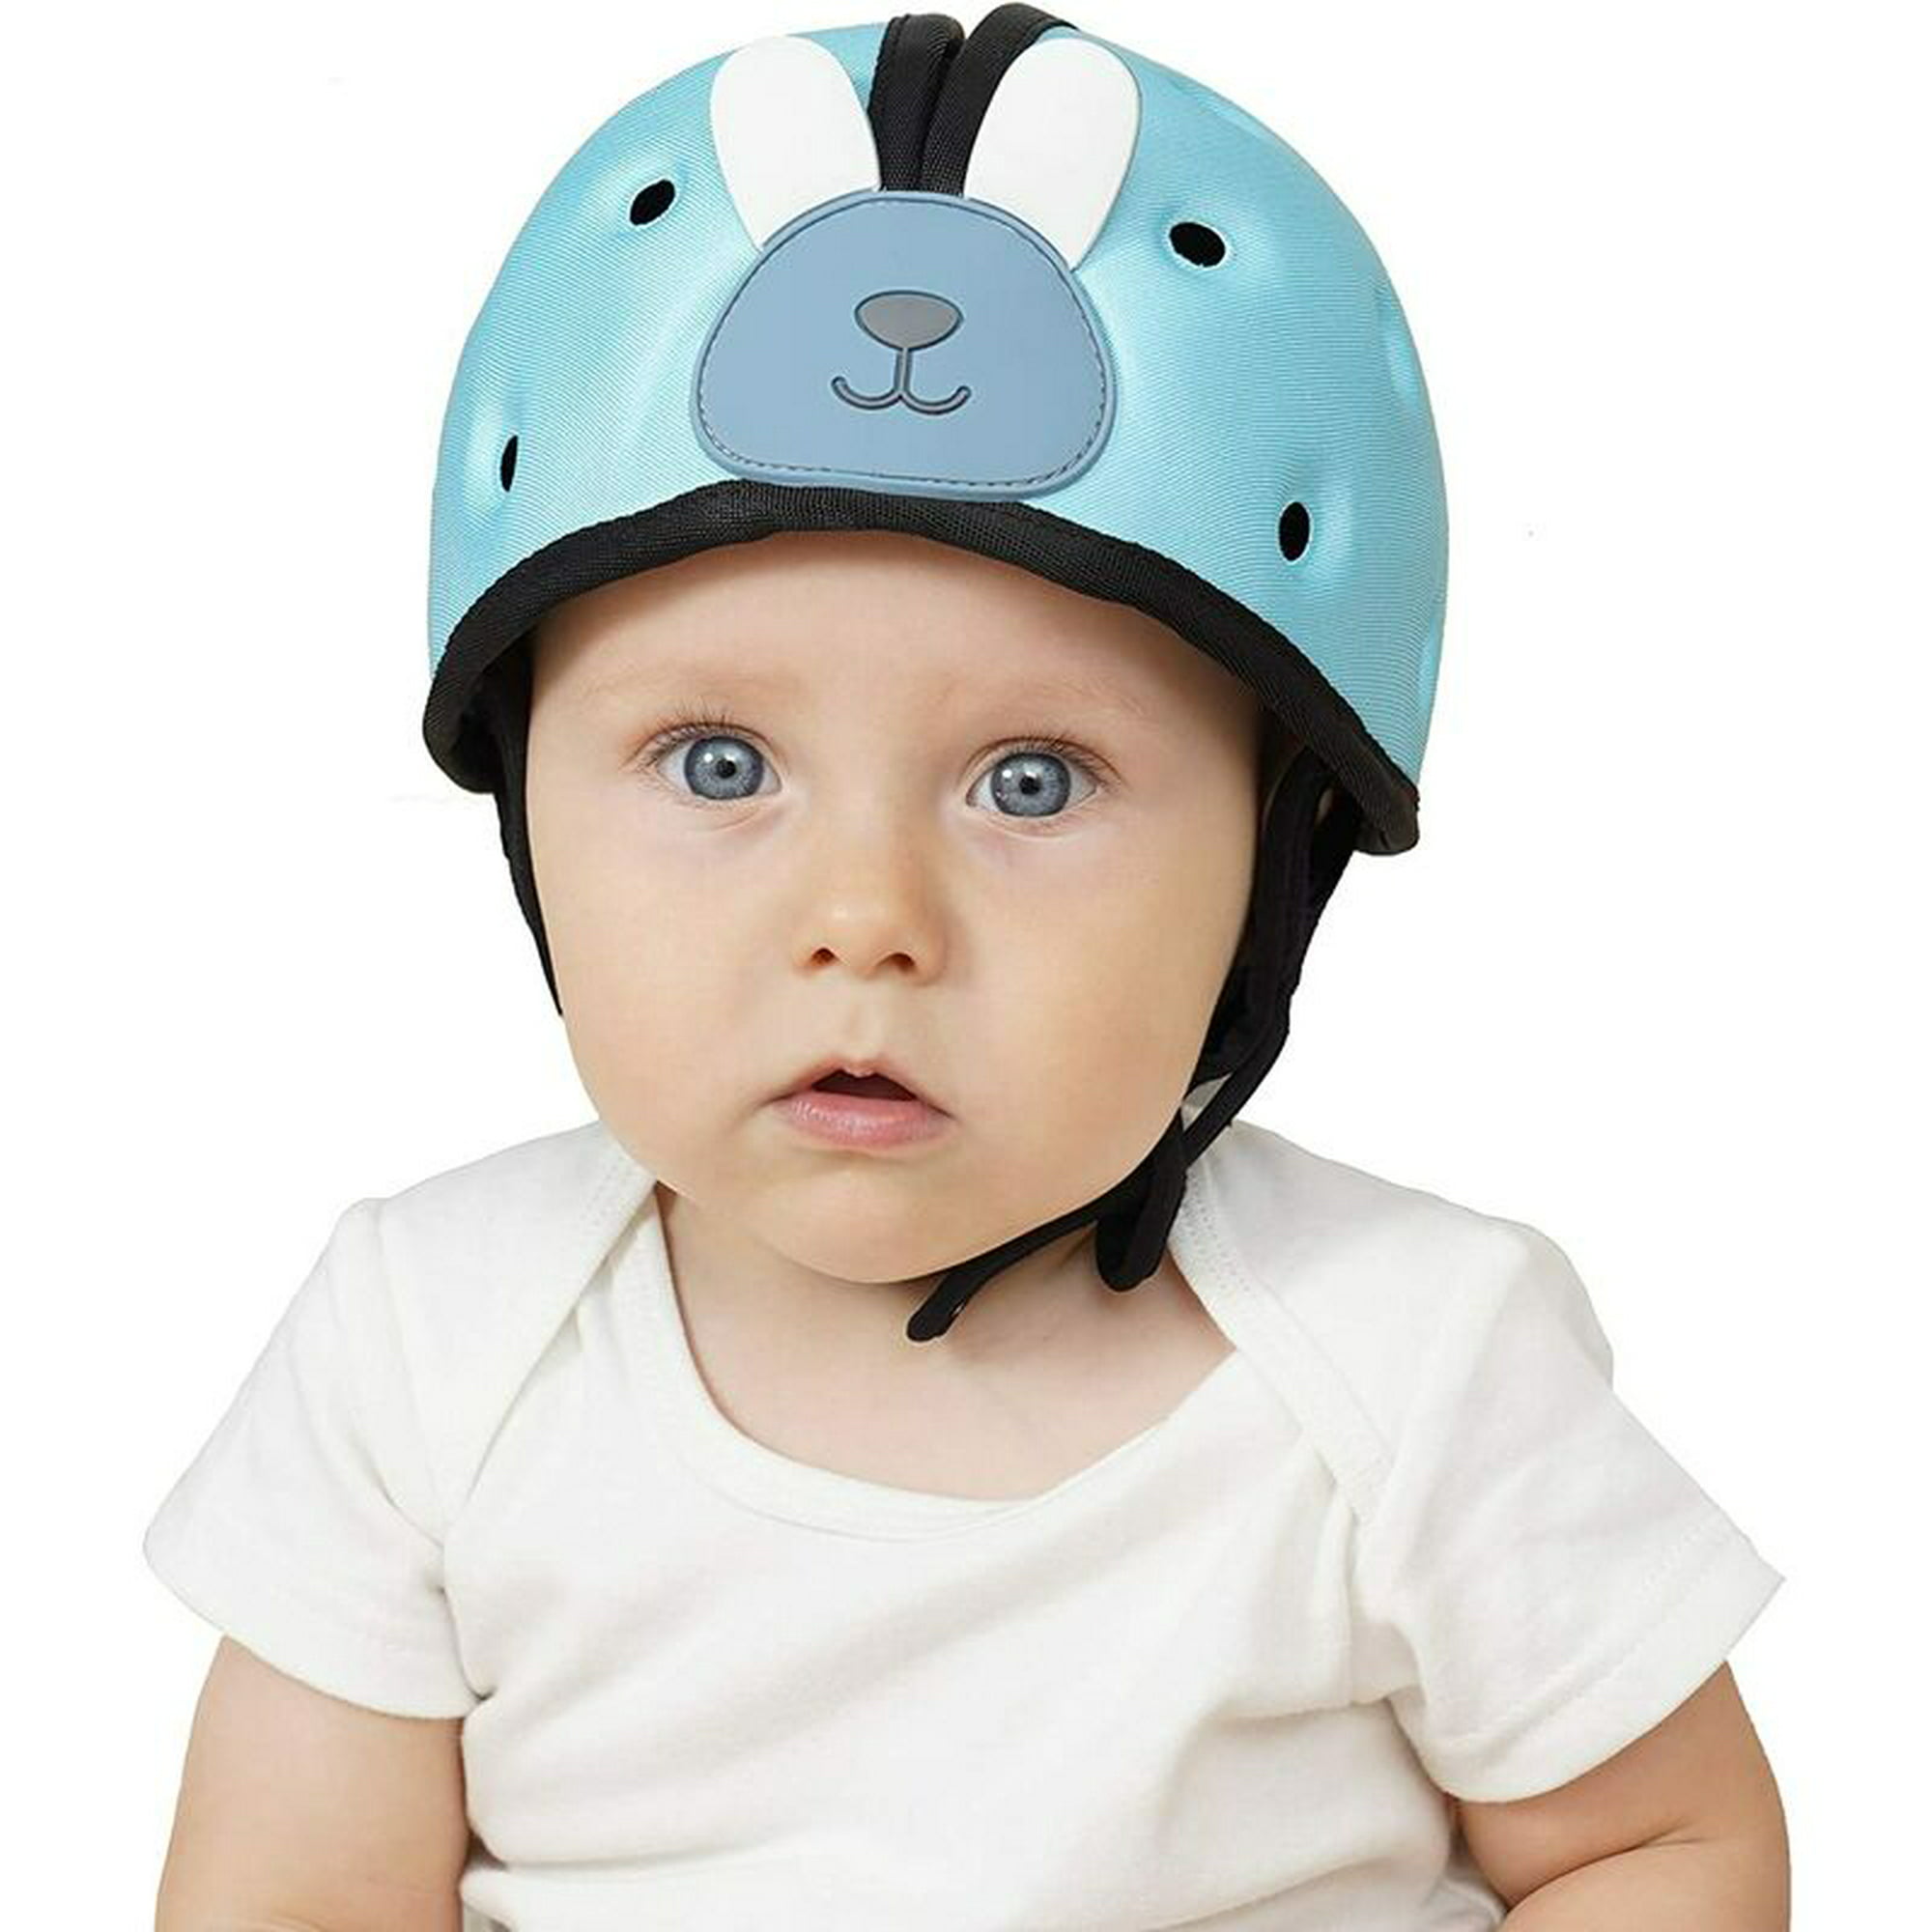 Play and kids - Casco seguridad bebé $9.990 casco protector para bebé, anti  golpes. con tiras para ajustar a su menton y cierre velcro para ajustar en  la cabeza.